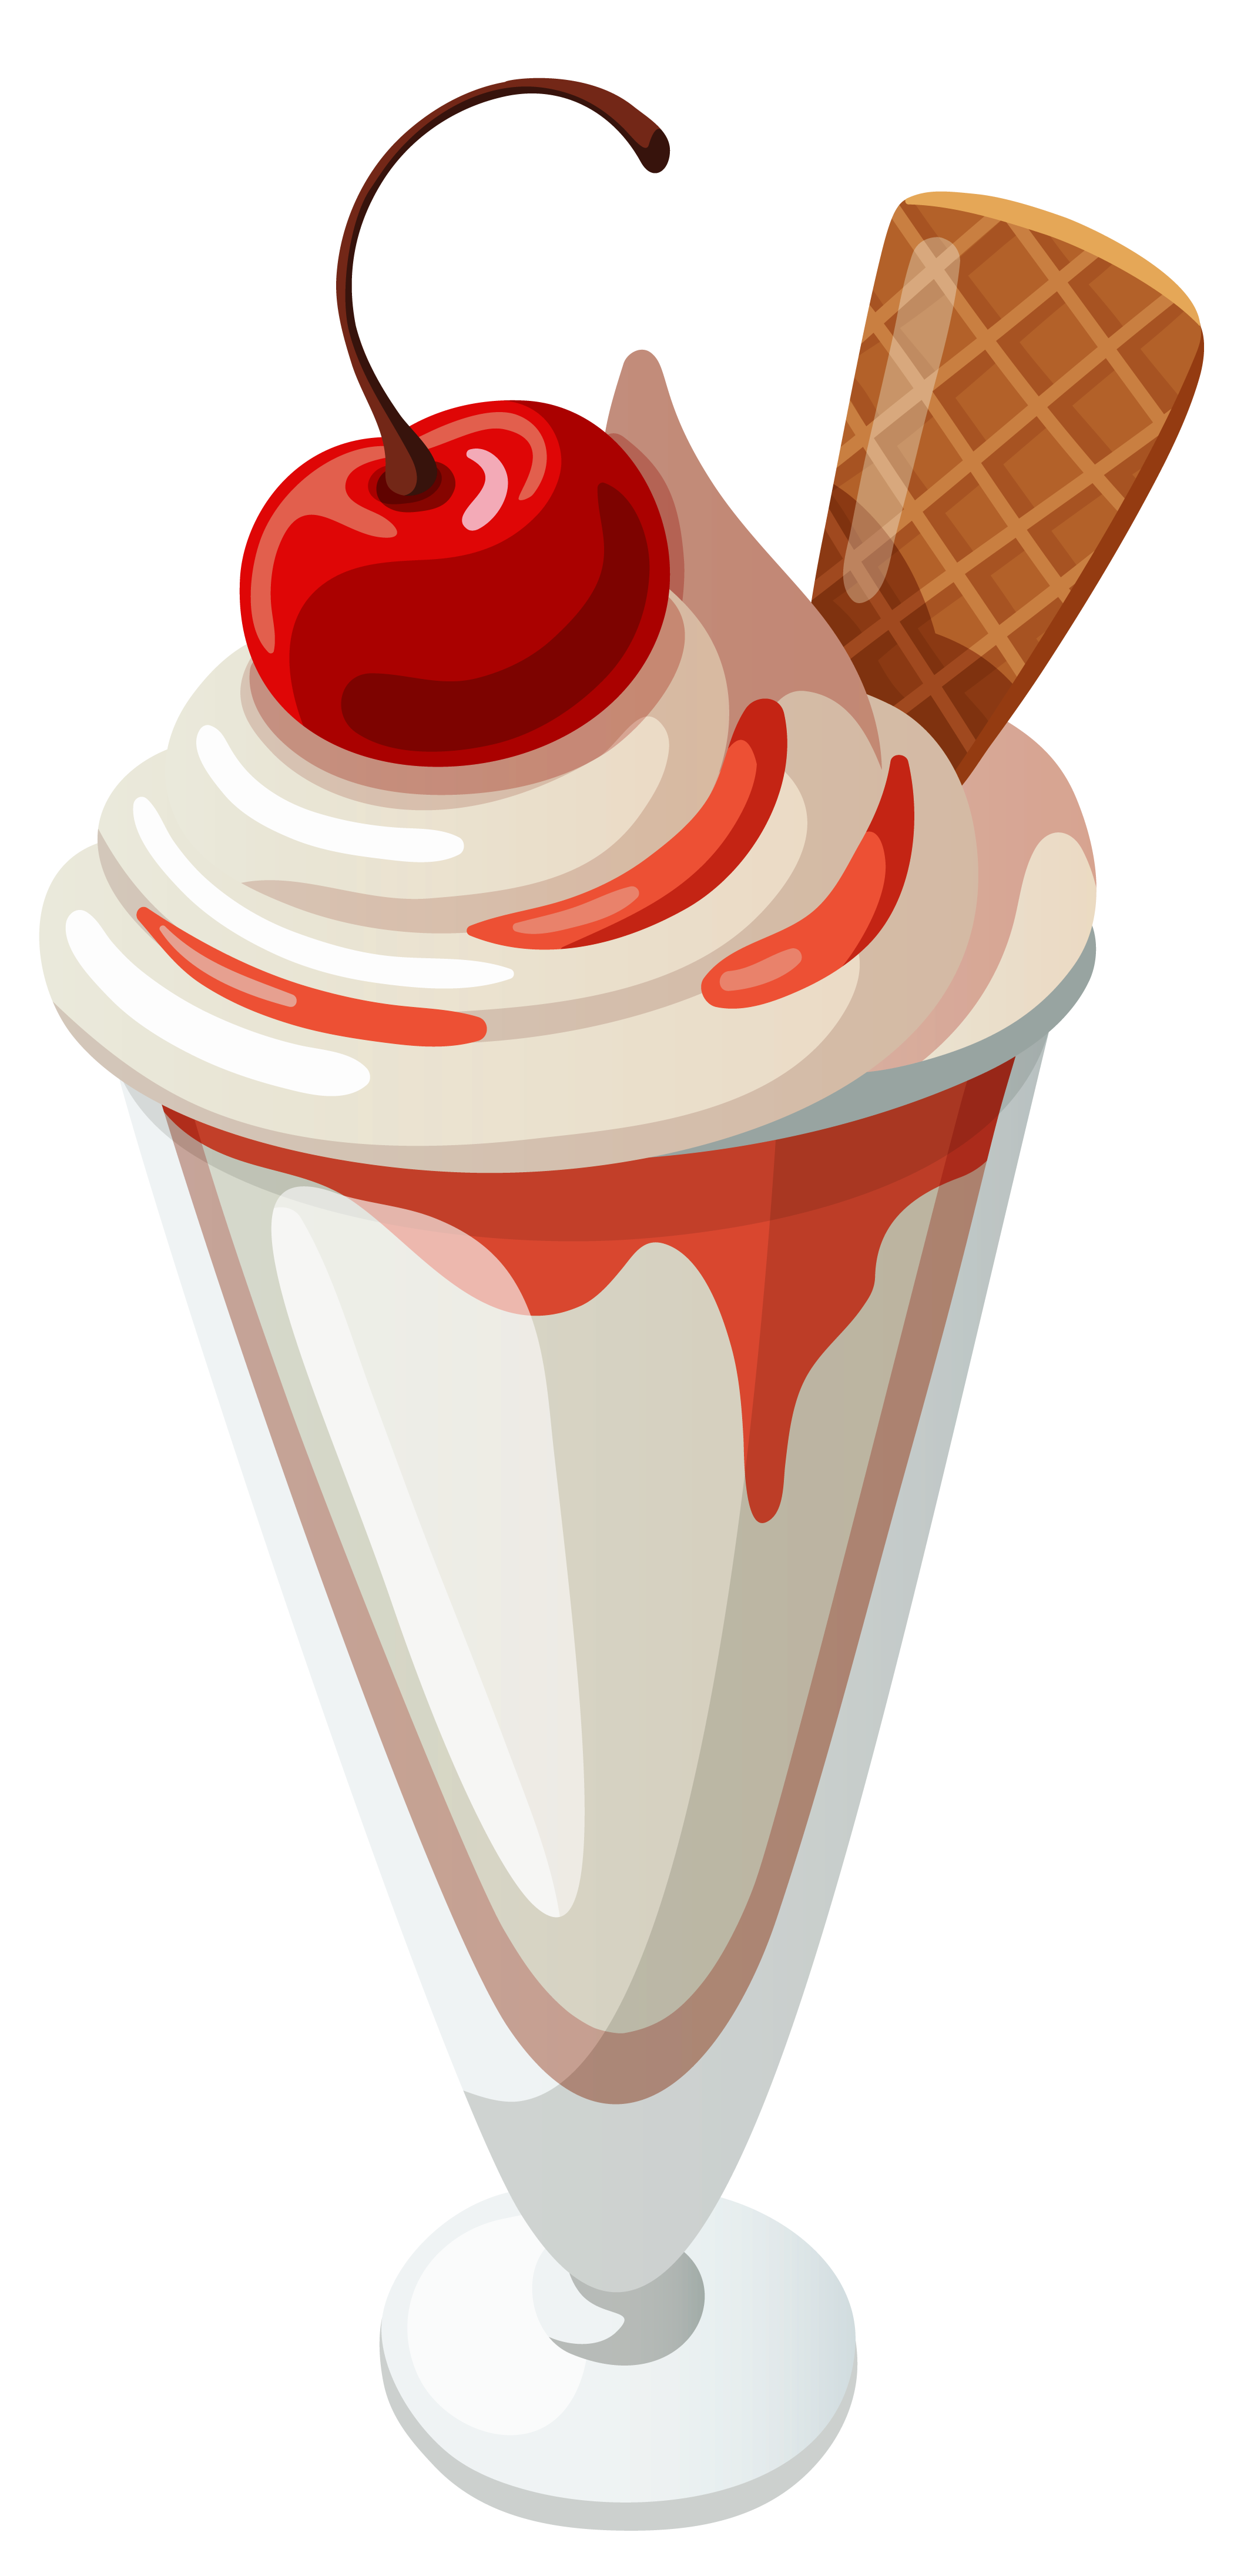 Ice cream sundae clip art.